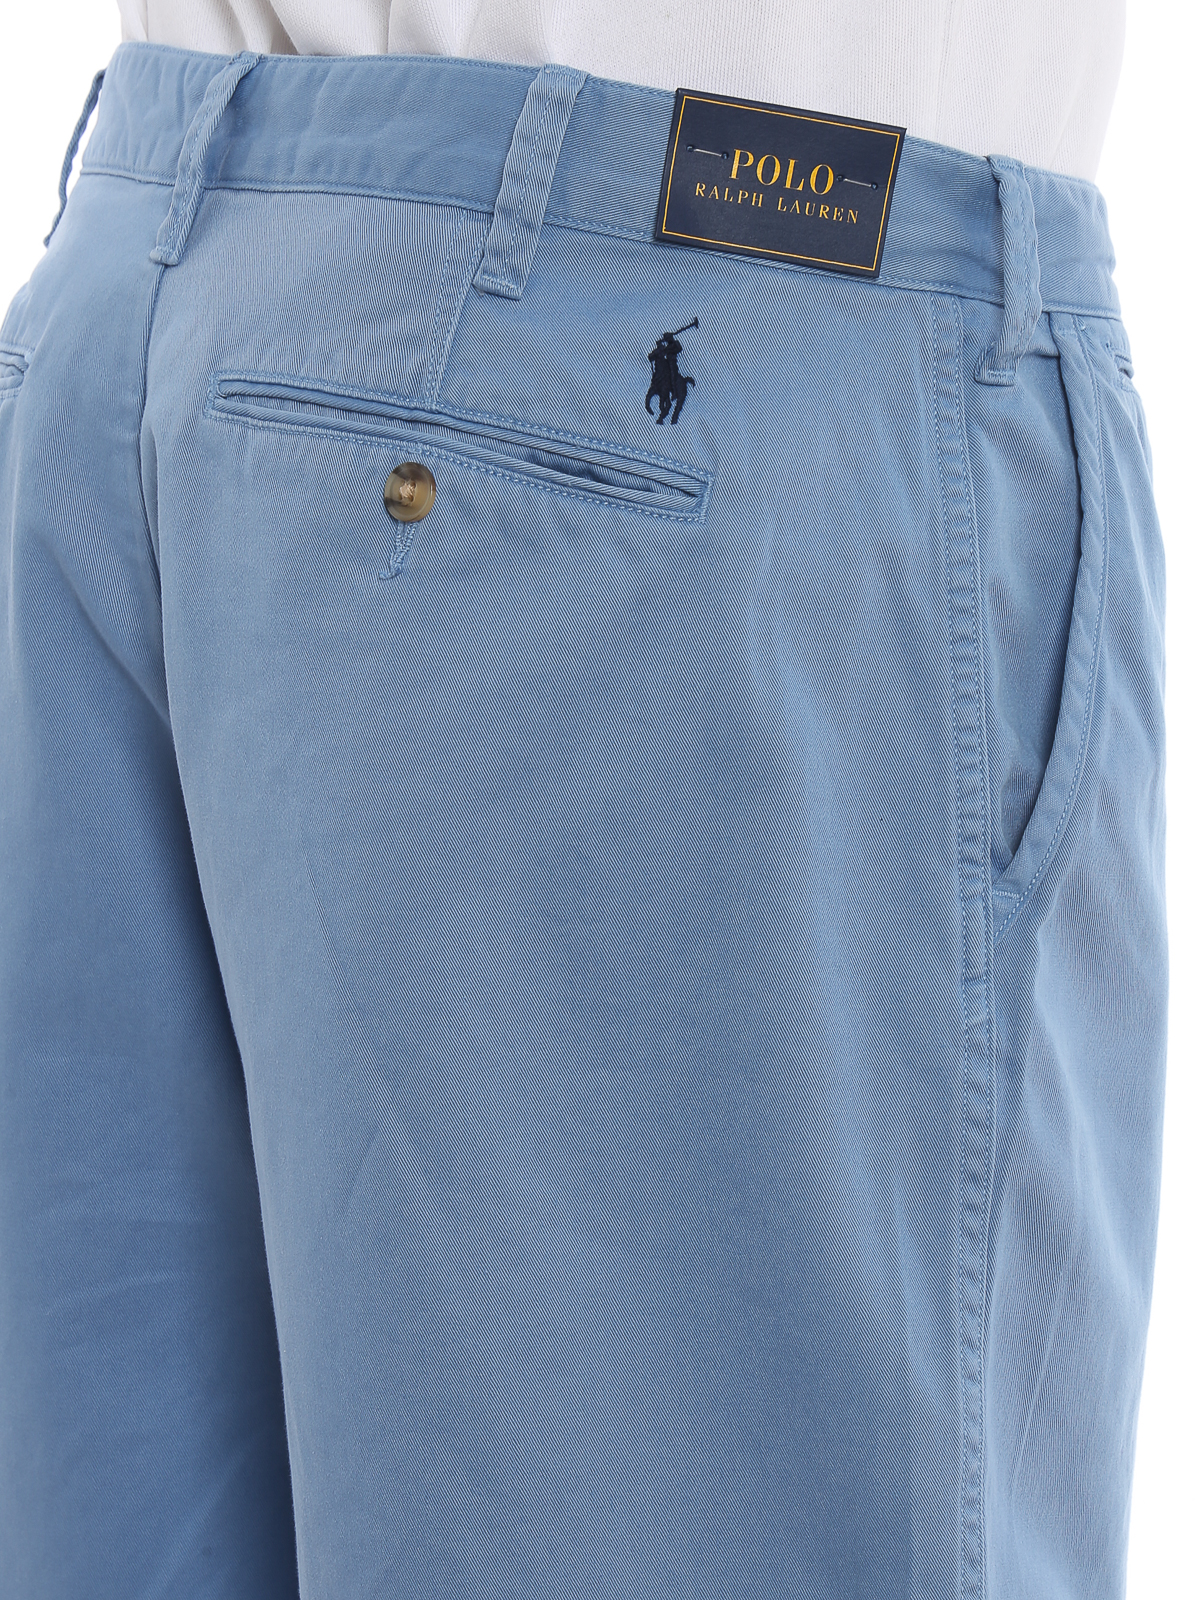 Pantalones casual Polo Ralph Lauren - Pantalón Casual - - 710740571002